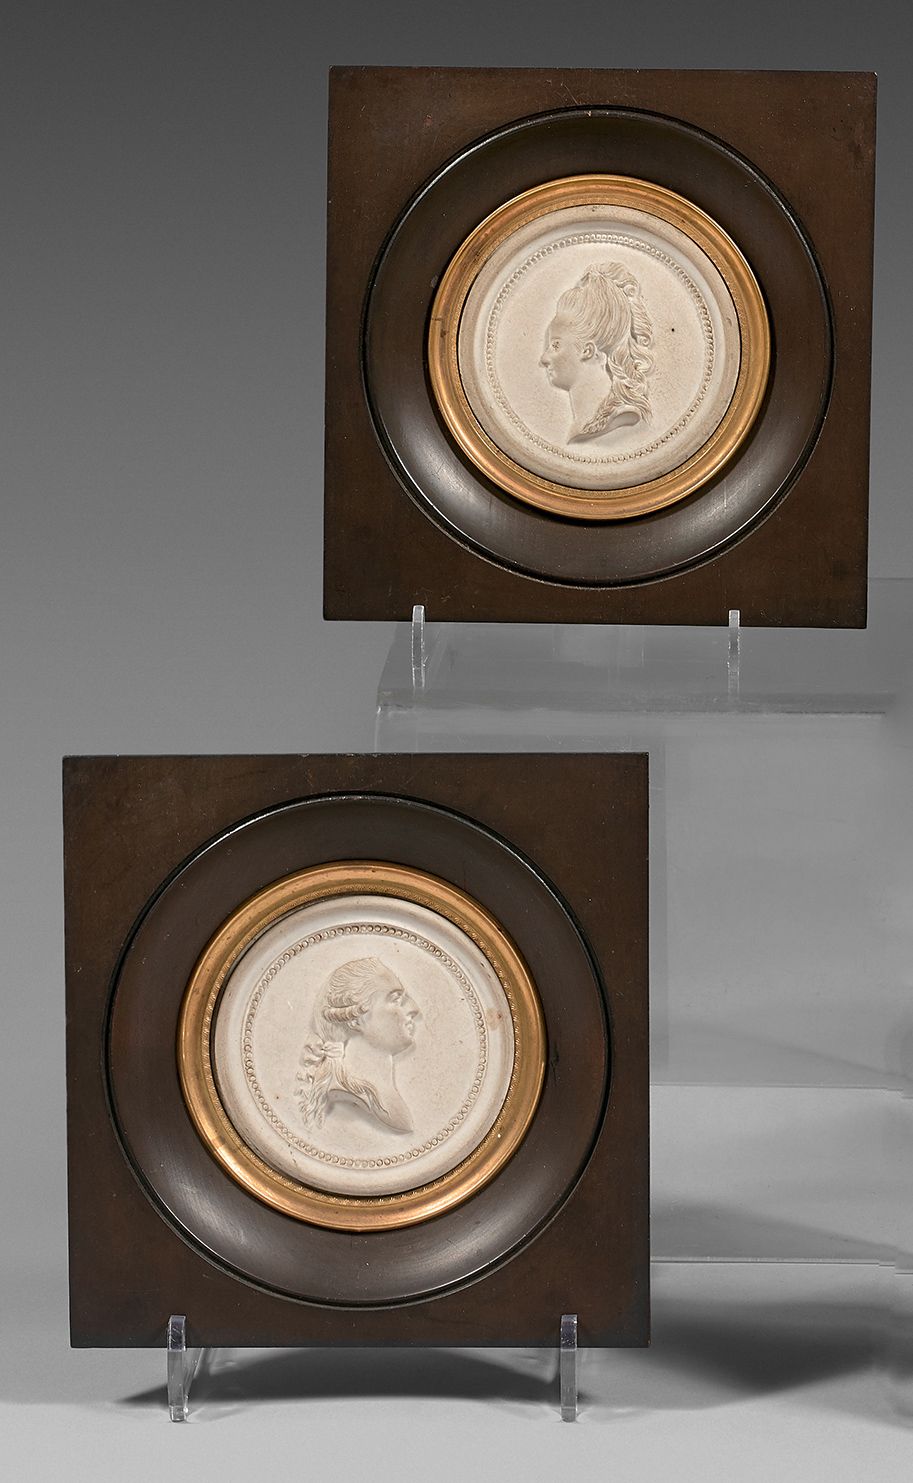 Null 一对18世纪的瓷器奖章，可能是塞夫勒
表现路易十六和玛丽-安托瓦内特的模塑奖章，有一排珍珠，在后来的木头和镀金金属框架中
饼干的直径：约7厘米 - 总&hellip;